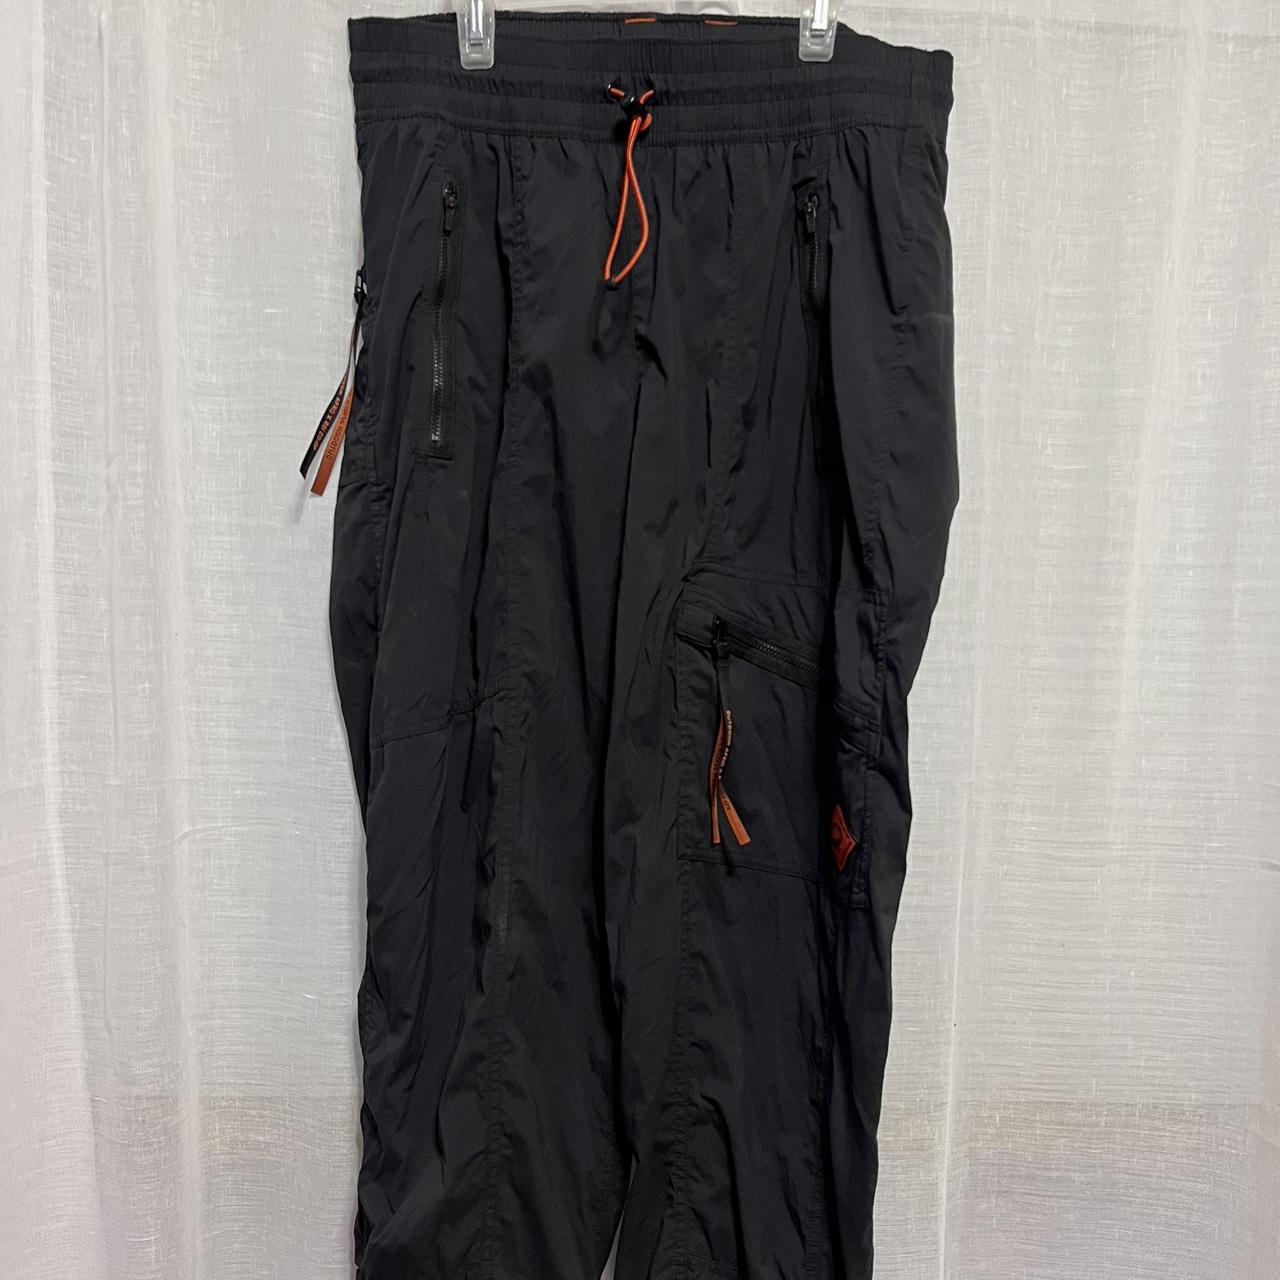 Halogen black wide leg dress pants size 12 career - Depop